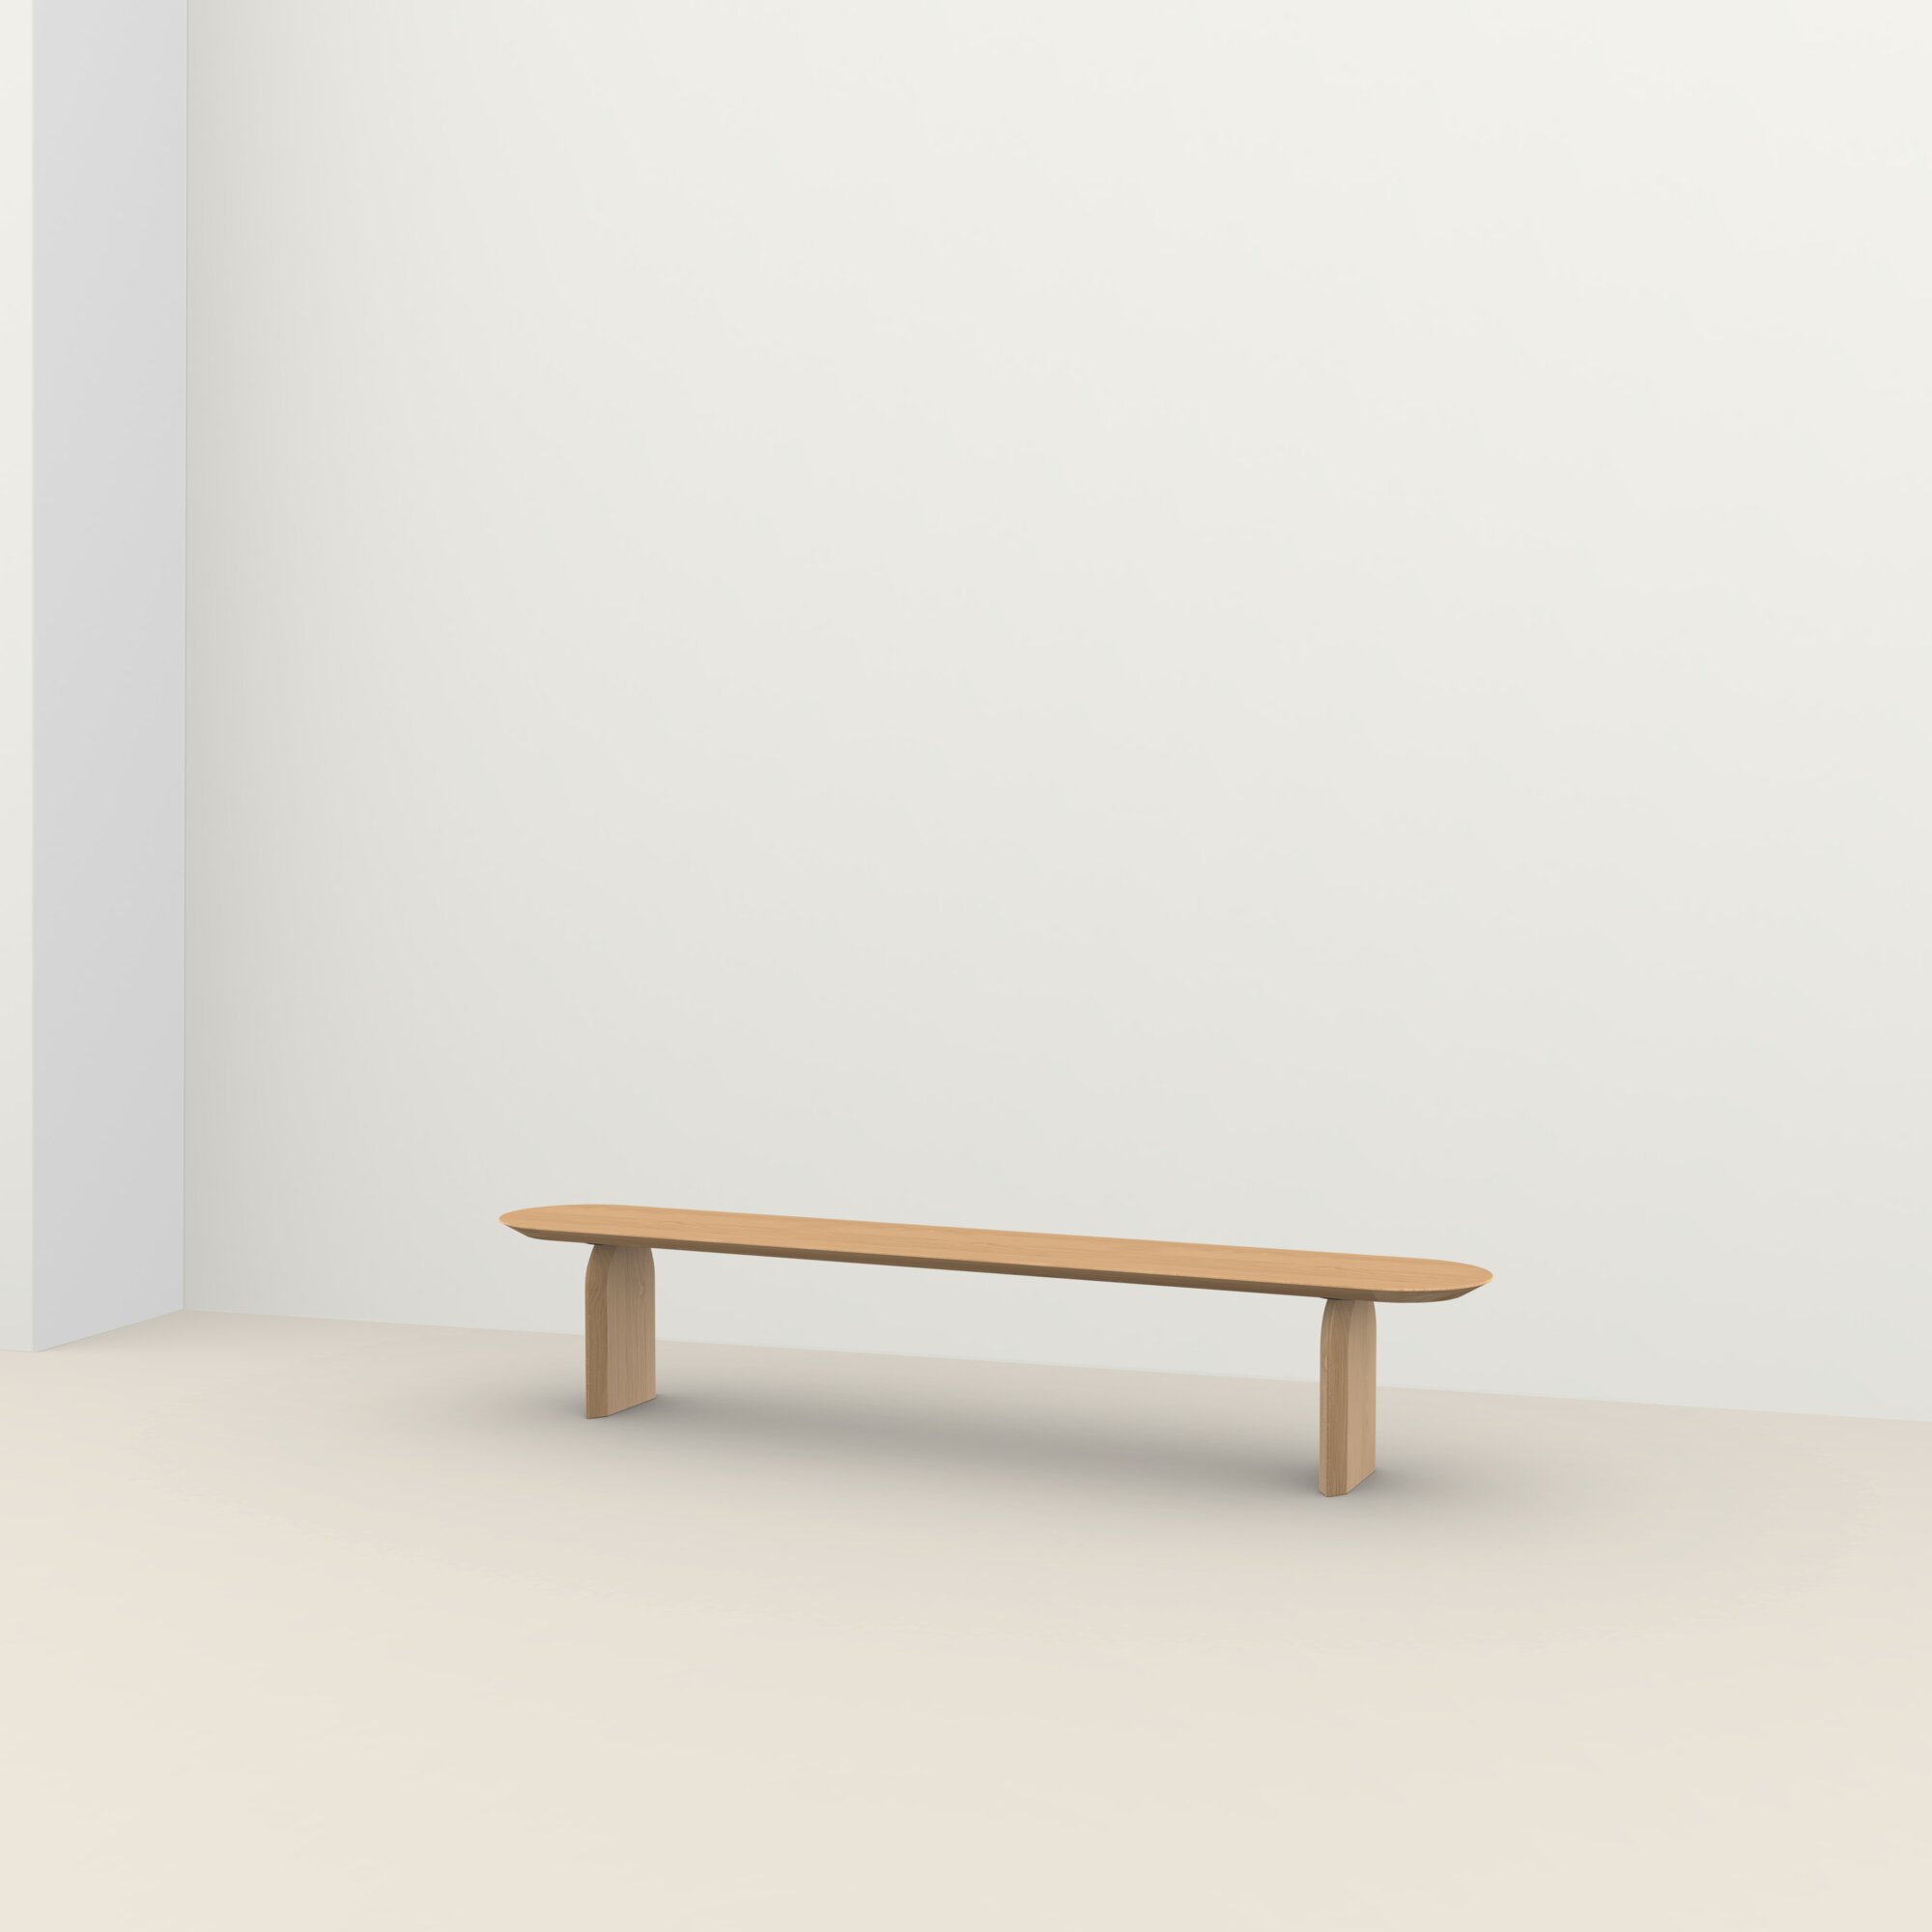 Design Dining Bench | Slot bench Oak hardwax oil natural light 3041 | Oak hardwax oil natural light 3041 | Studio HENK| 